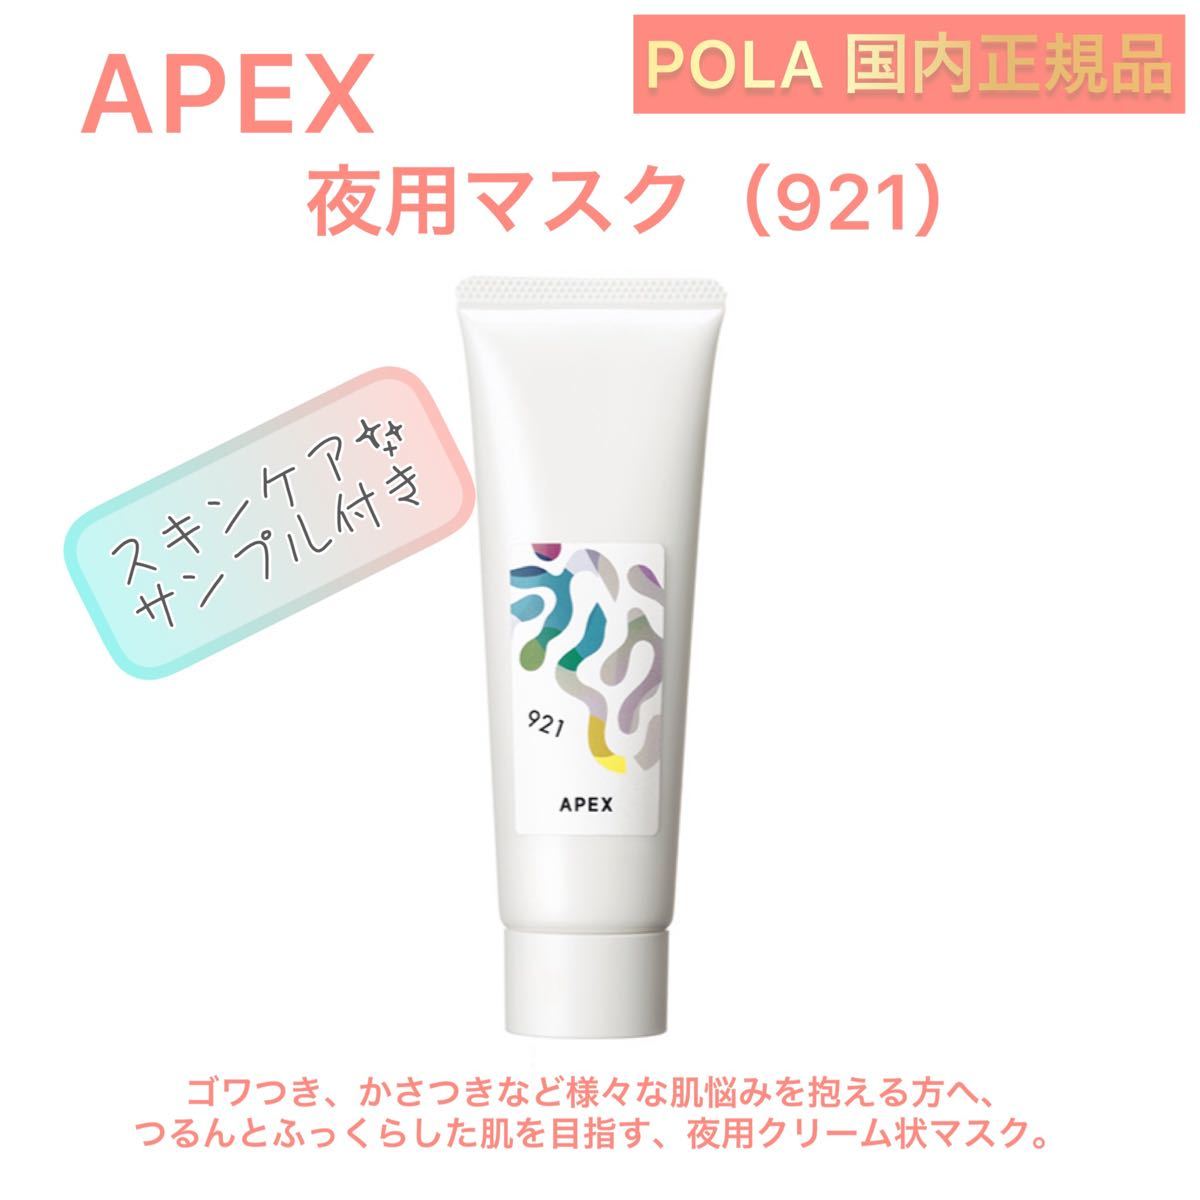 ポーラ APEX試しセット - 基礎化粧品